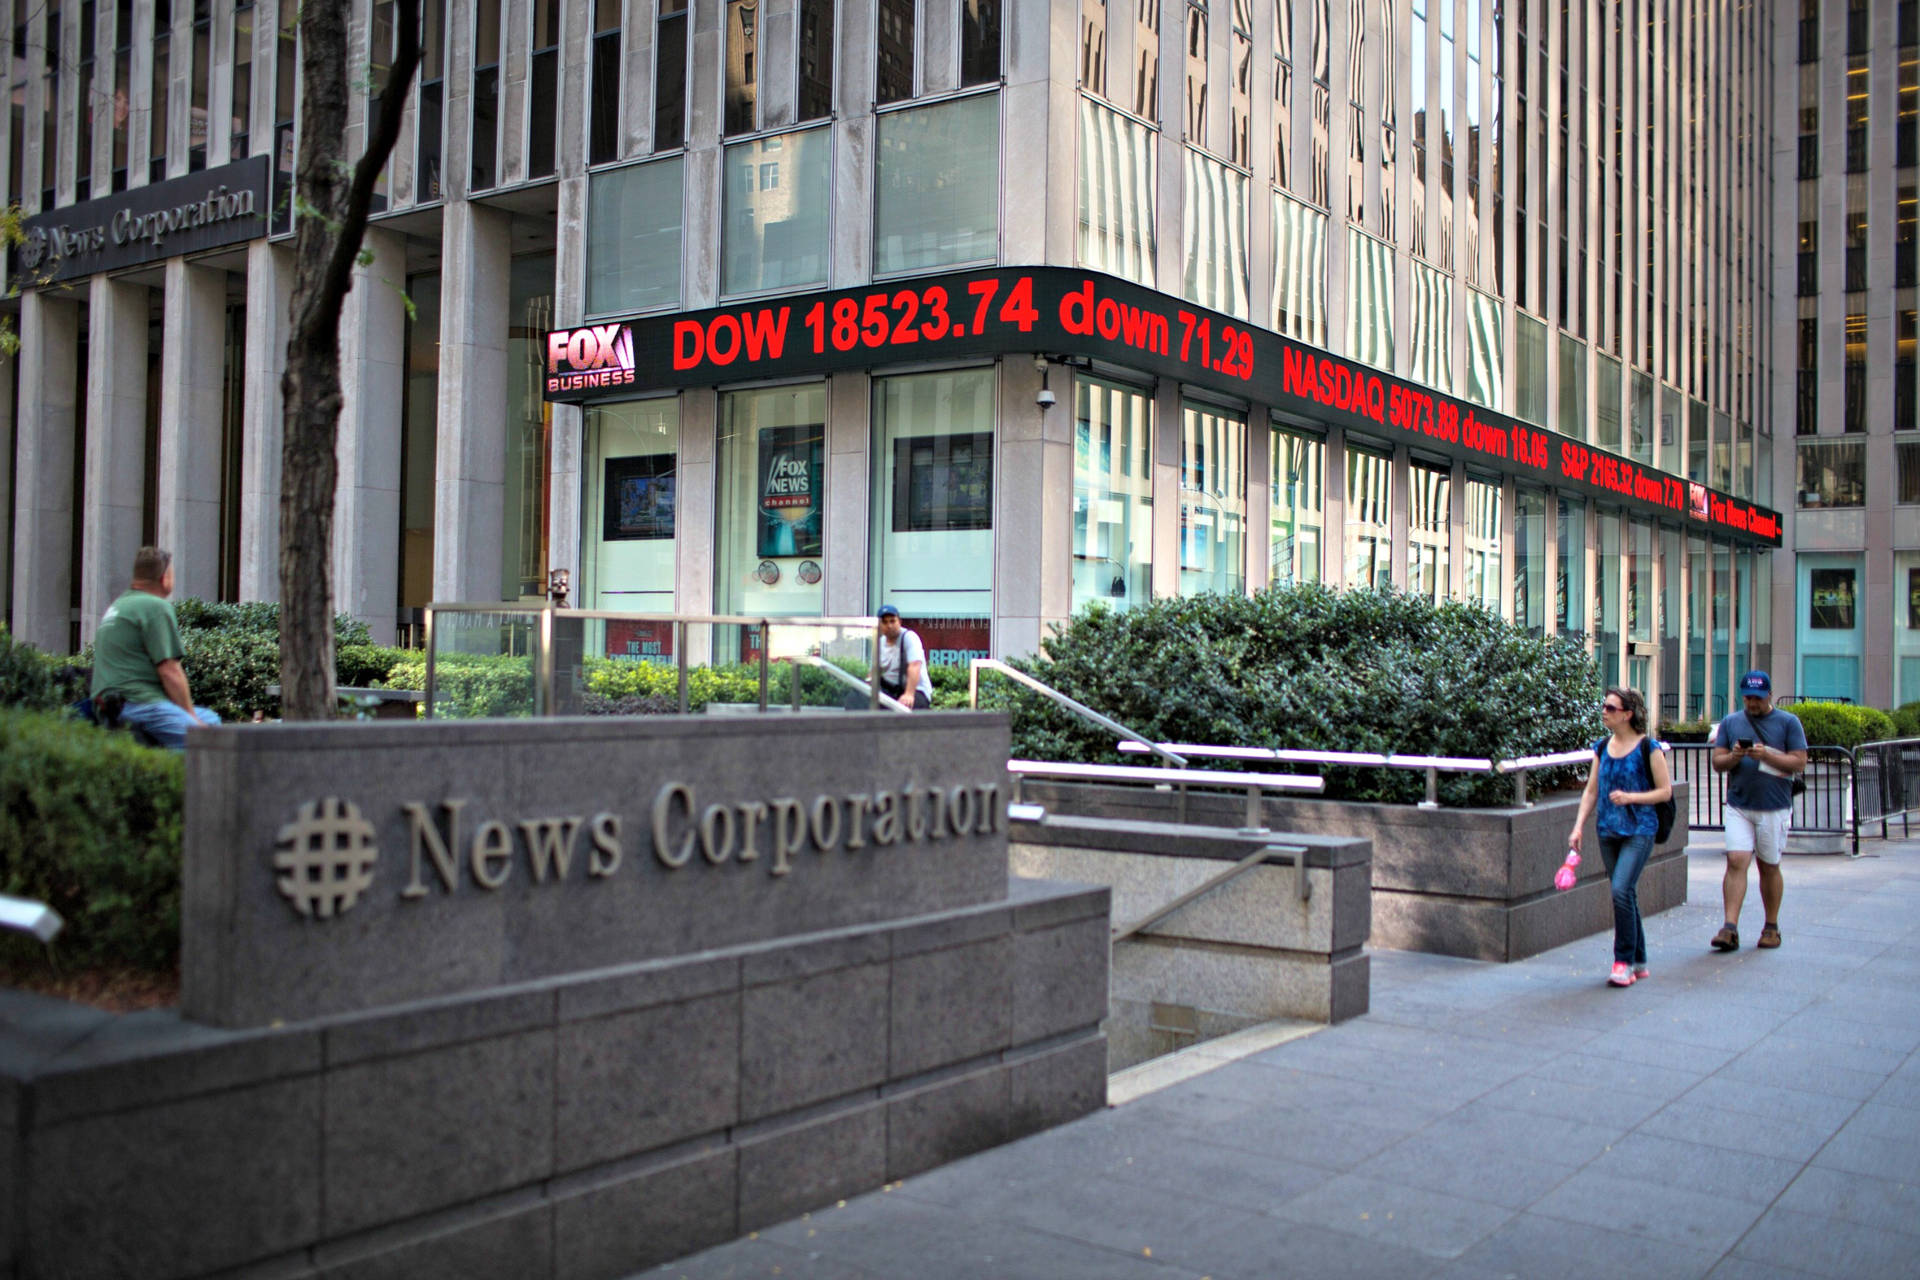 Bygningen fra Fox News Corporation ærmegrundtapet Tapet Wallpaper